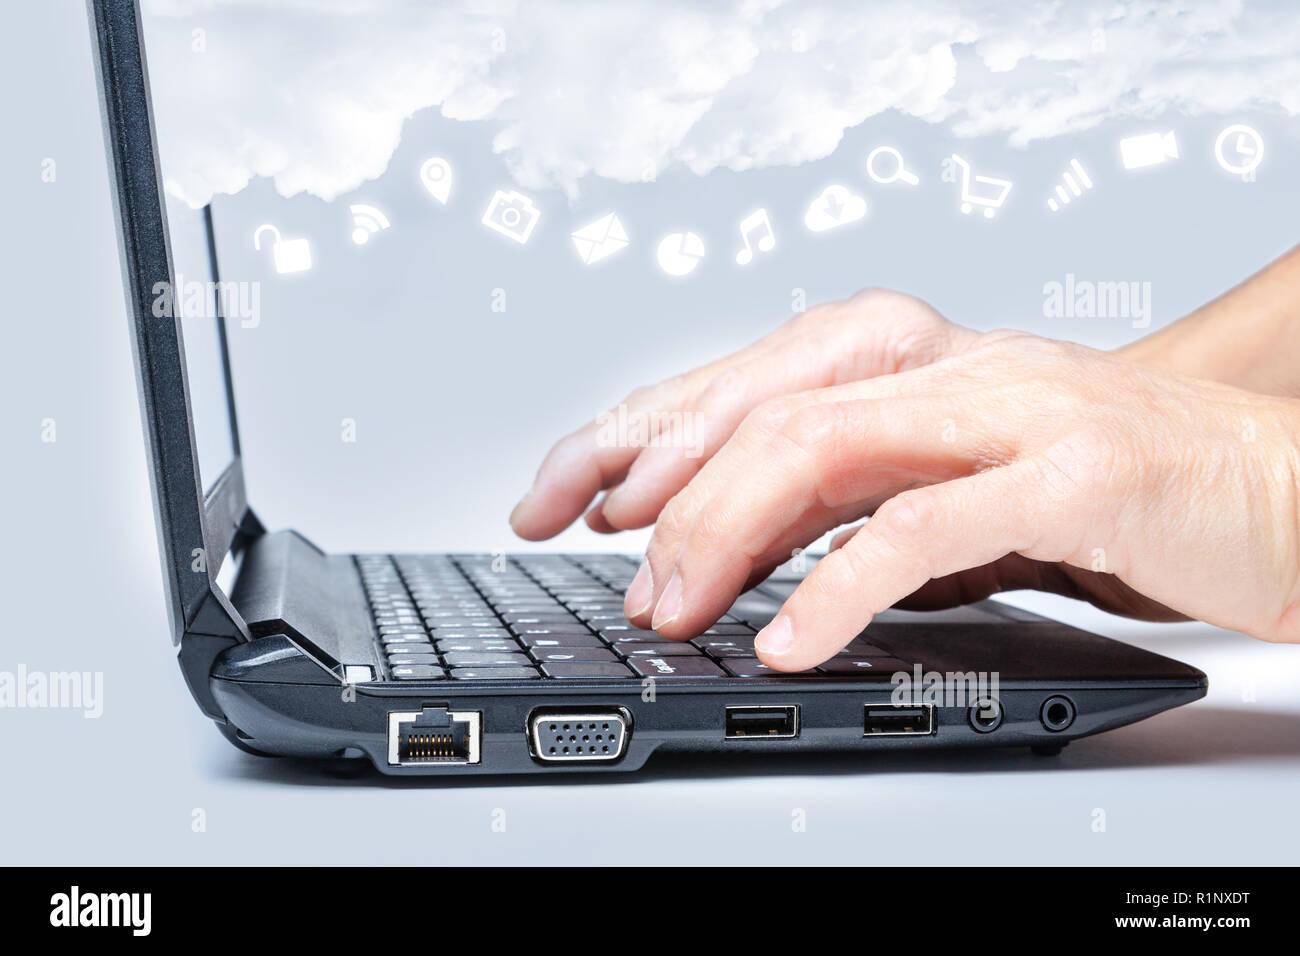 Cloud Computing Konzept Hände schreiben auf Tastatur mit Common Internet medien Symbole unter Wolken aus dem Bildschirm des Laptops. Stockfoto